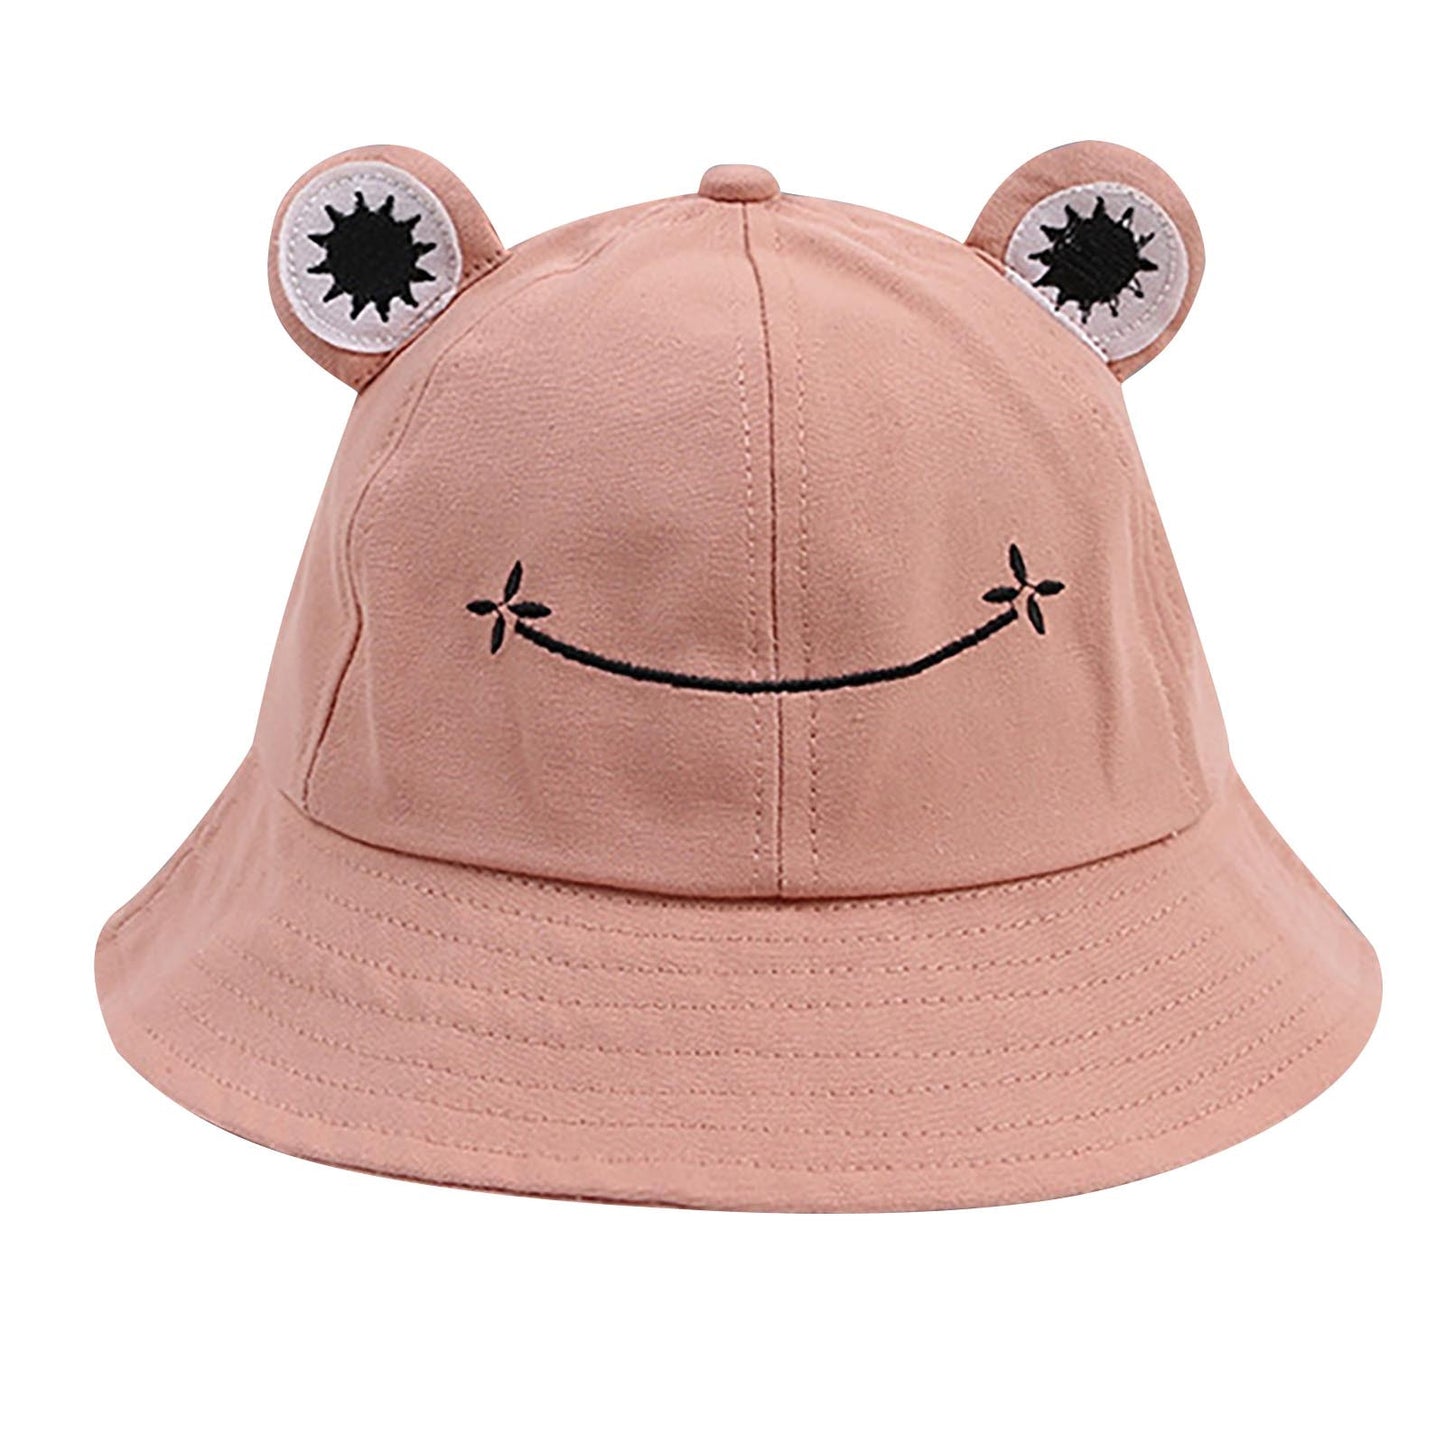 Frog Inspired Bucket Hats